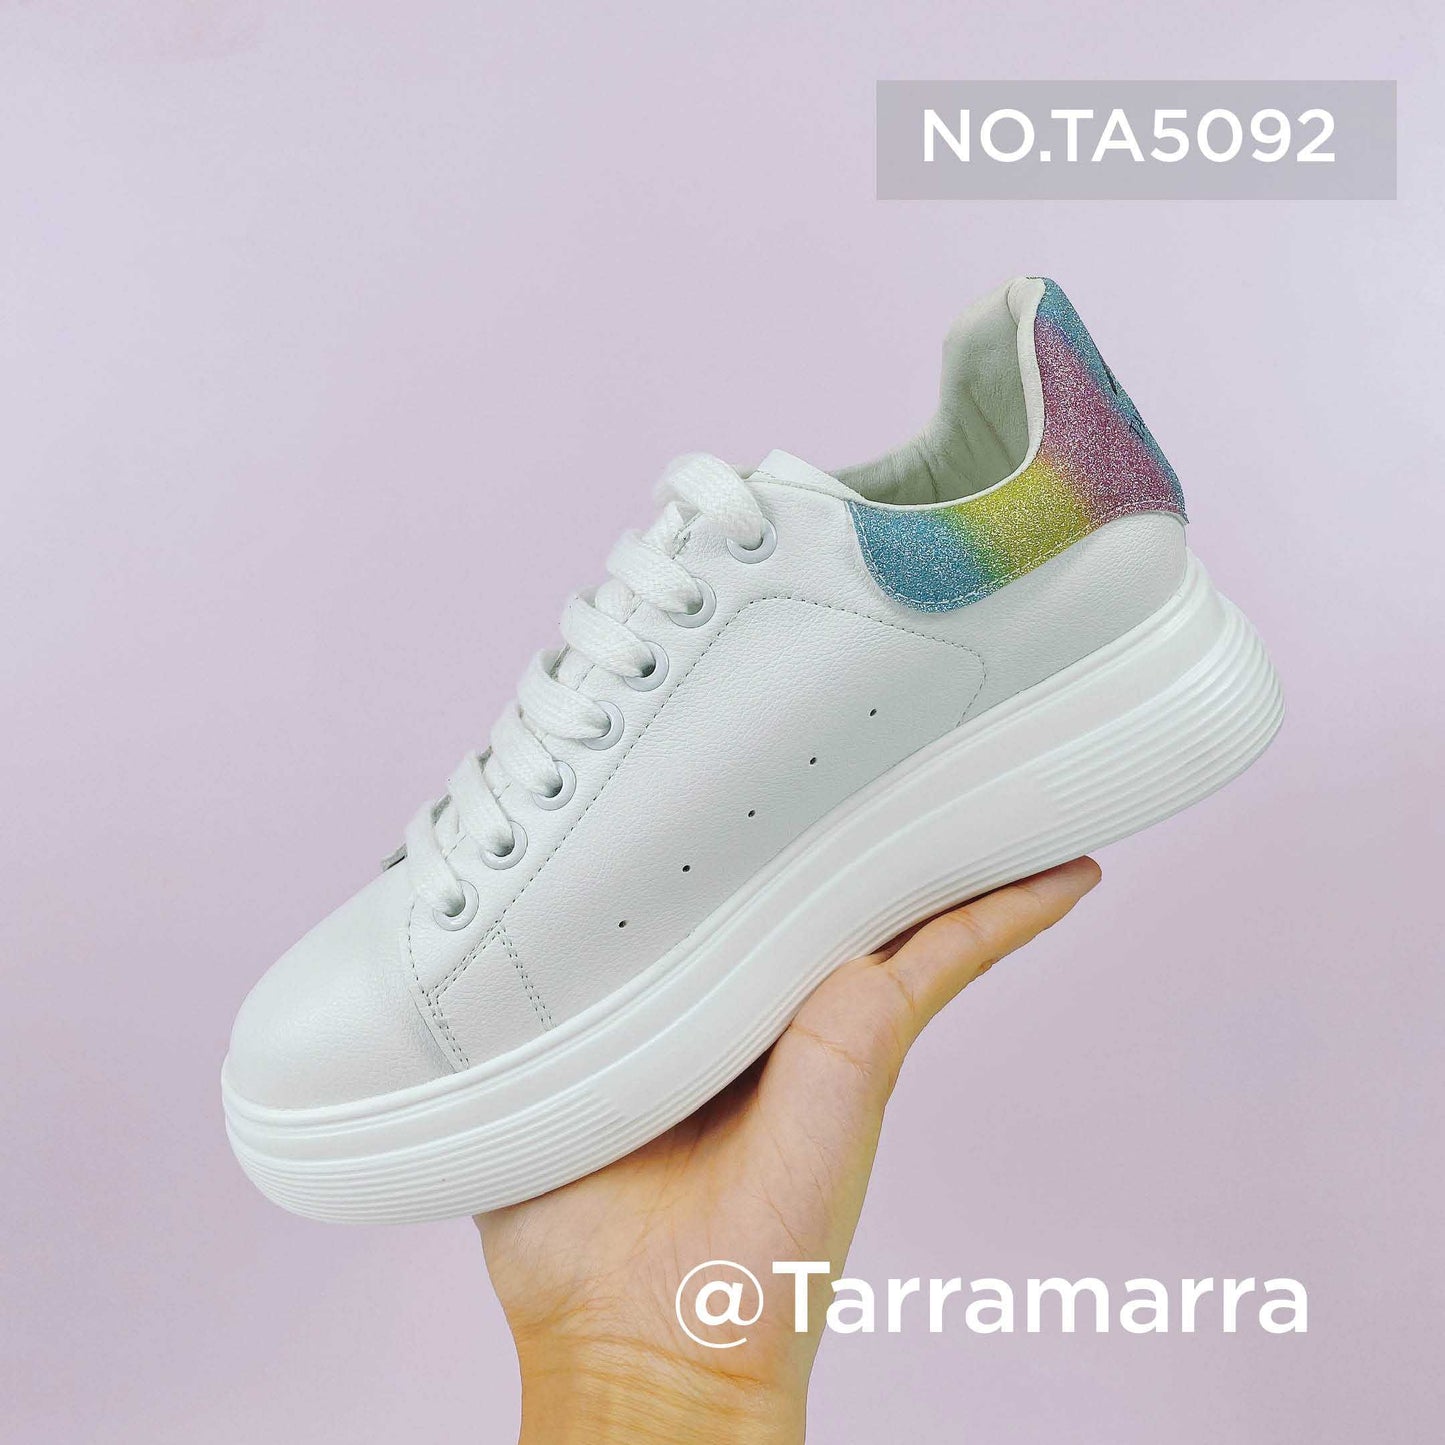 Tarramarra® White Sneakers Women Mya Boots TA5092